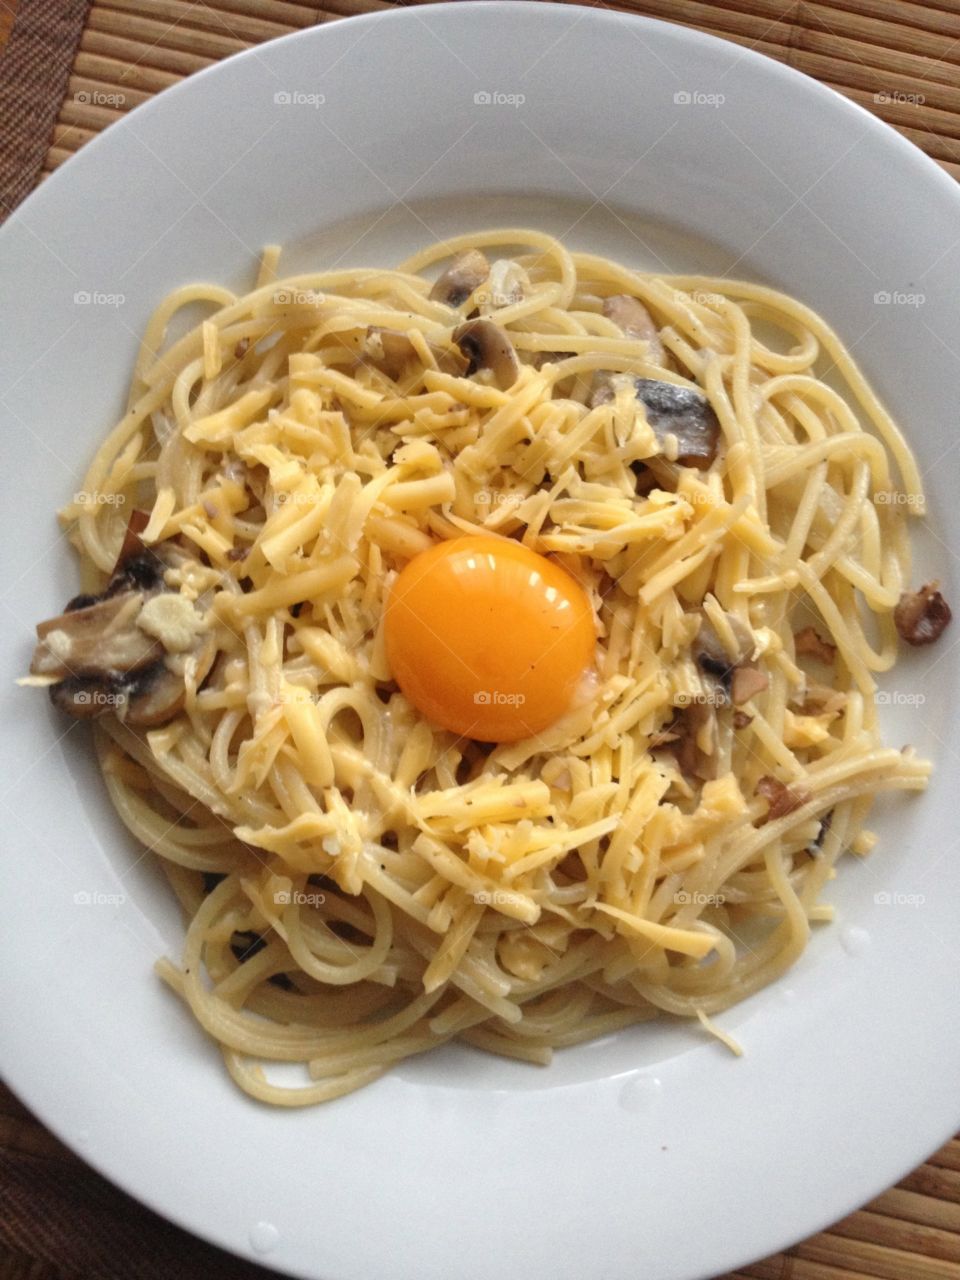 Spaghetti with egg yolk